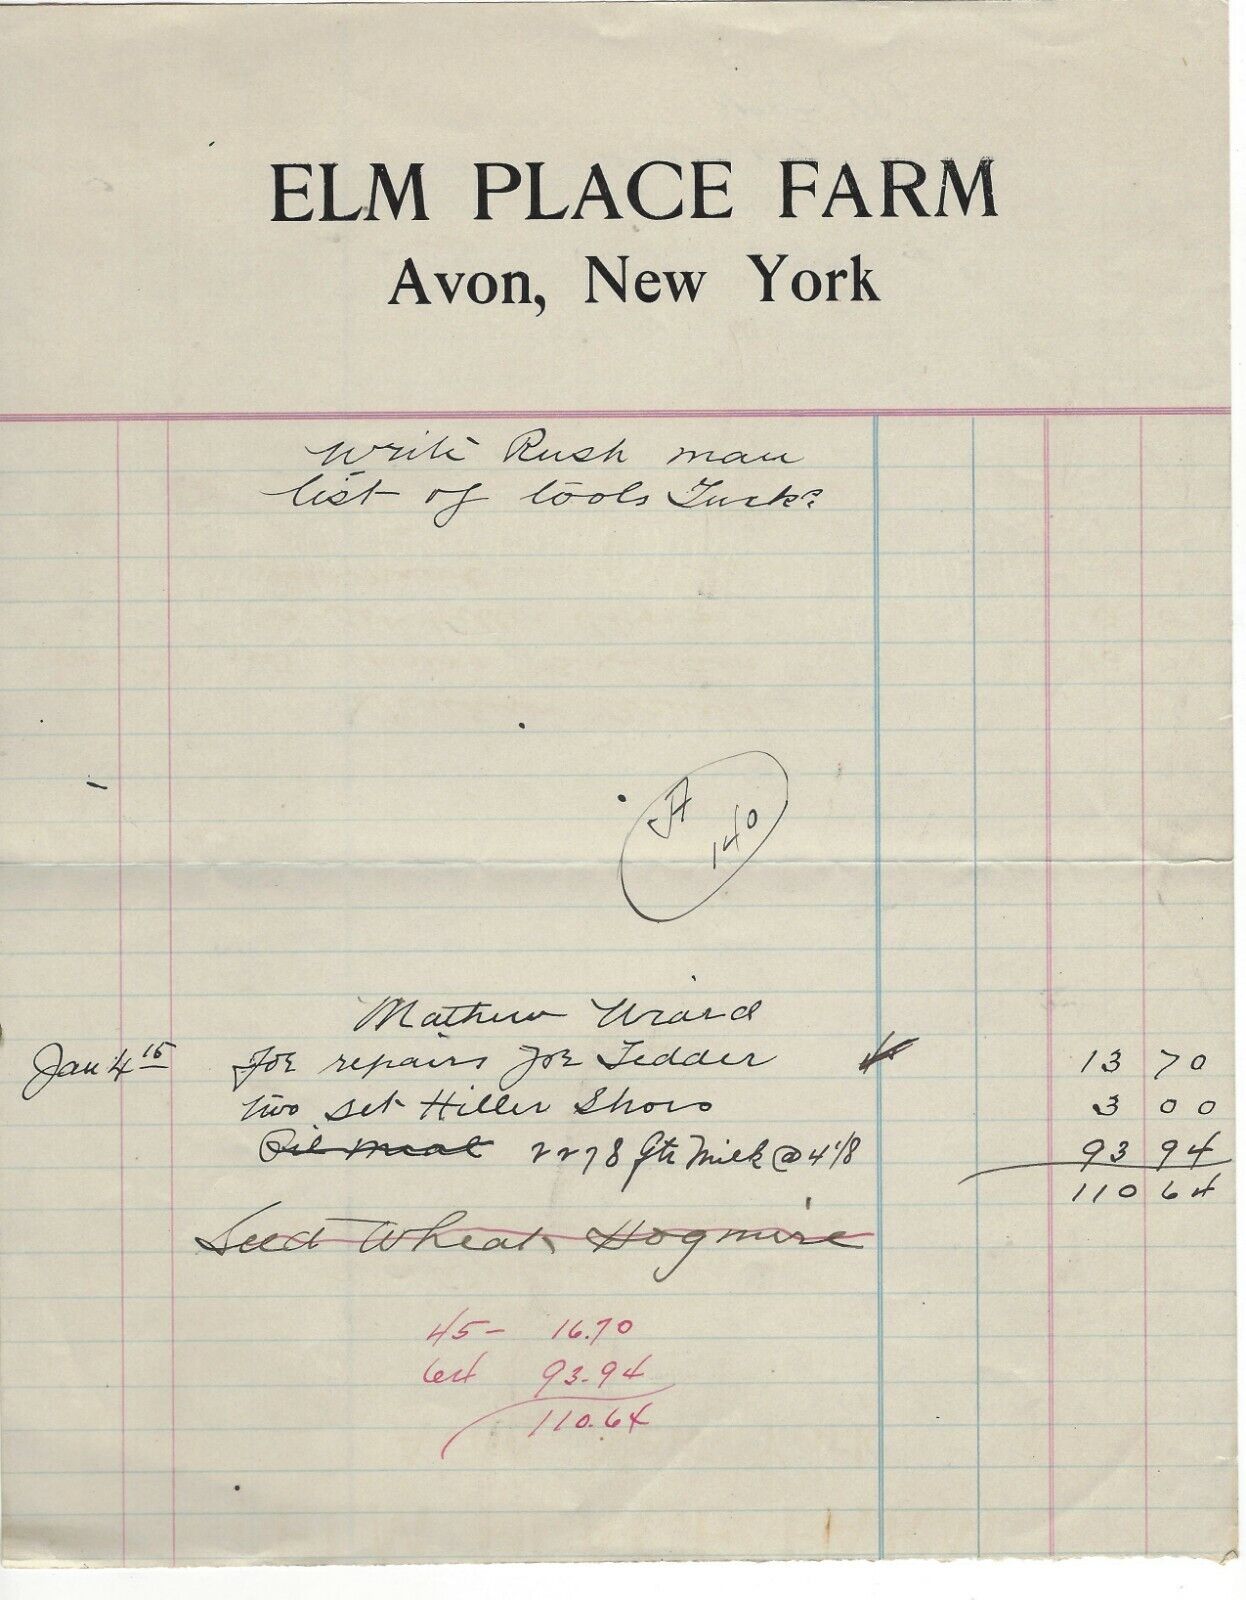 Circa 1910/1920, Invoice/Statement Elm Place Farm, Avon, New York, Repairs, Etc.